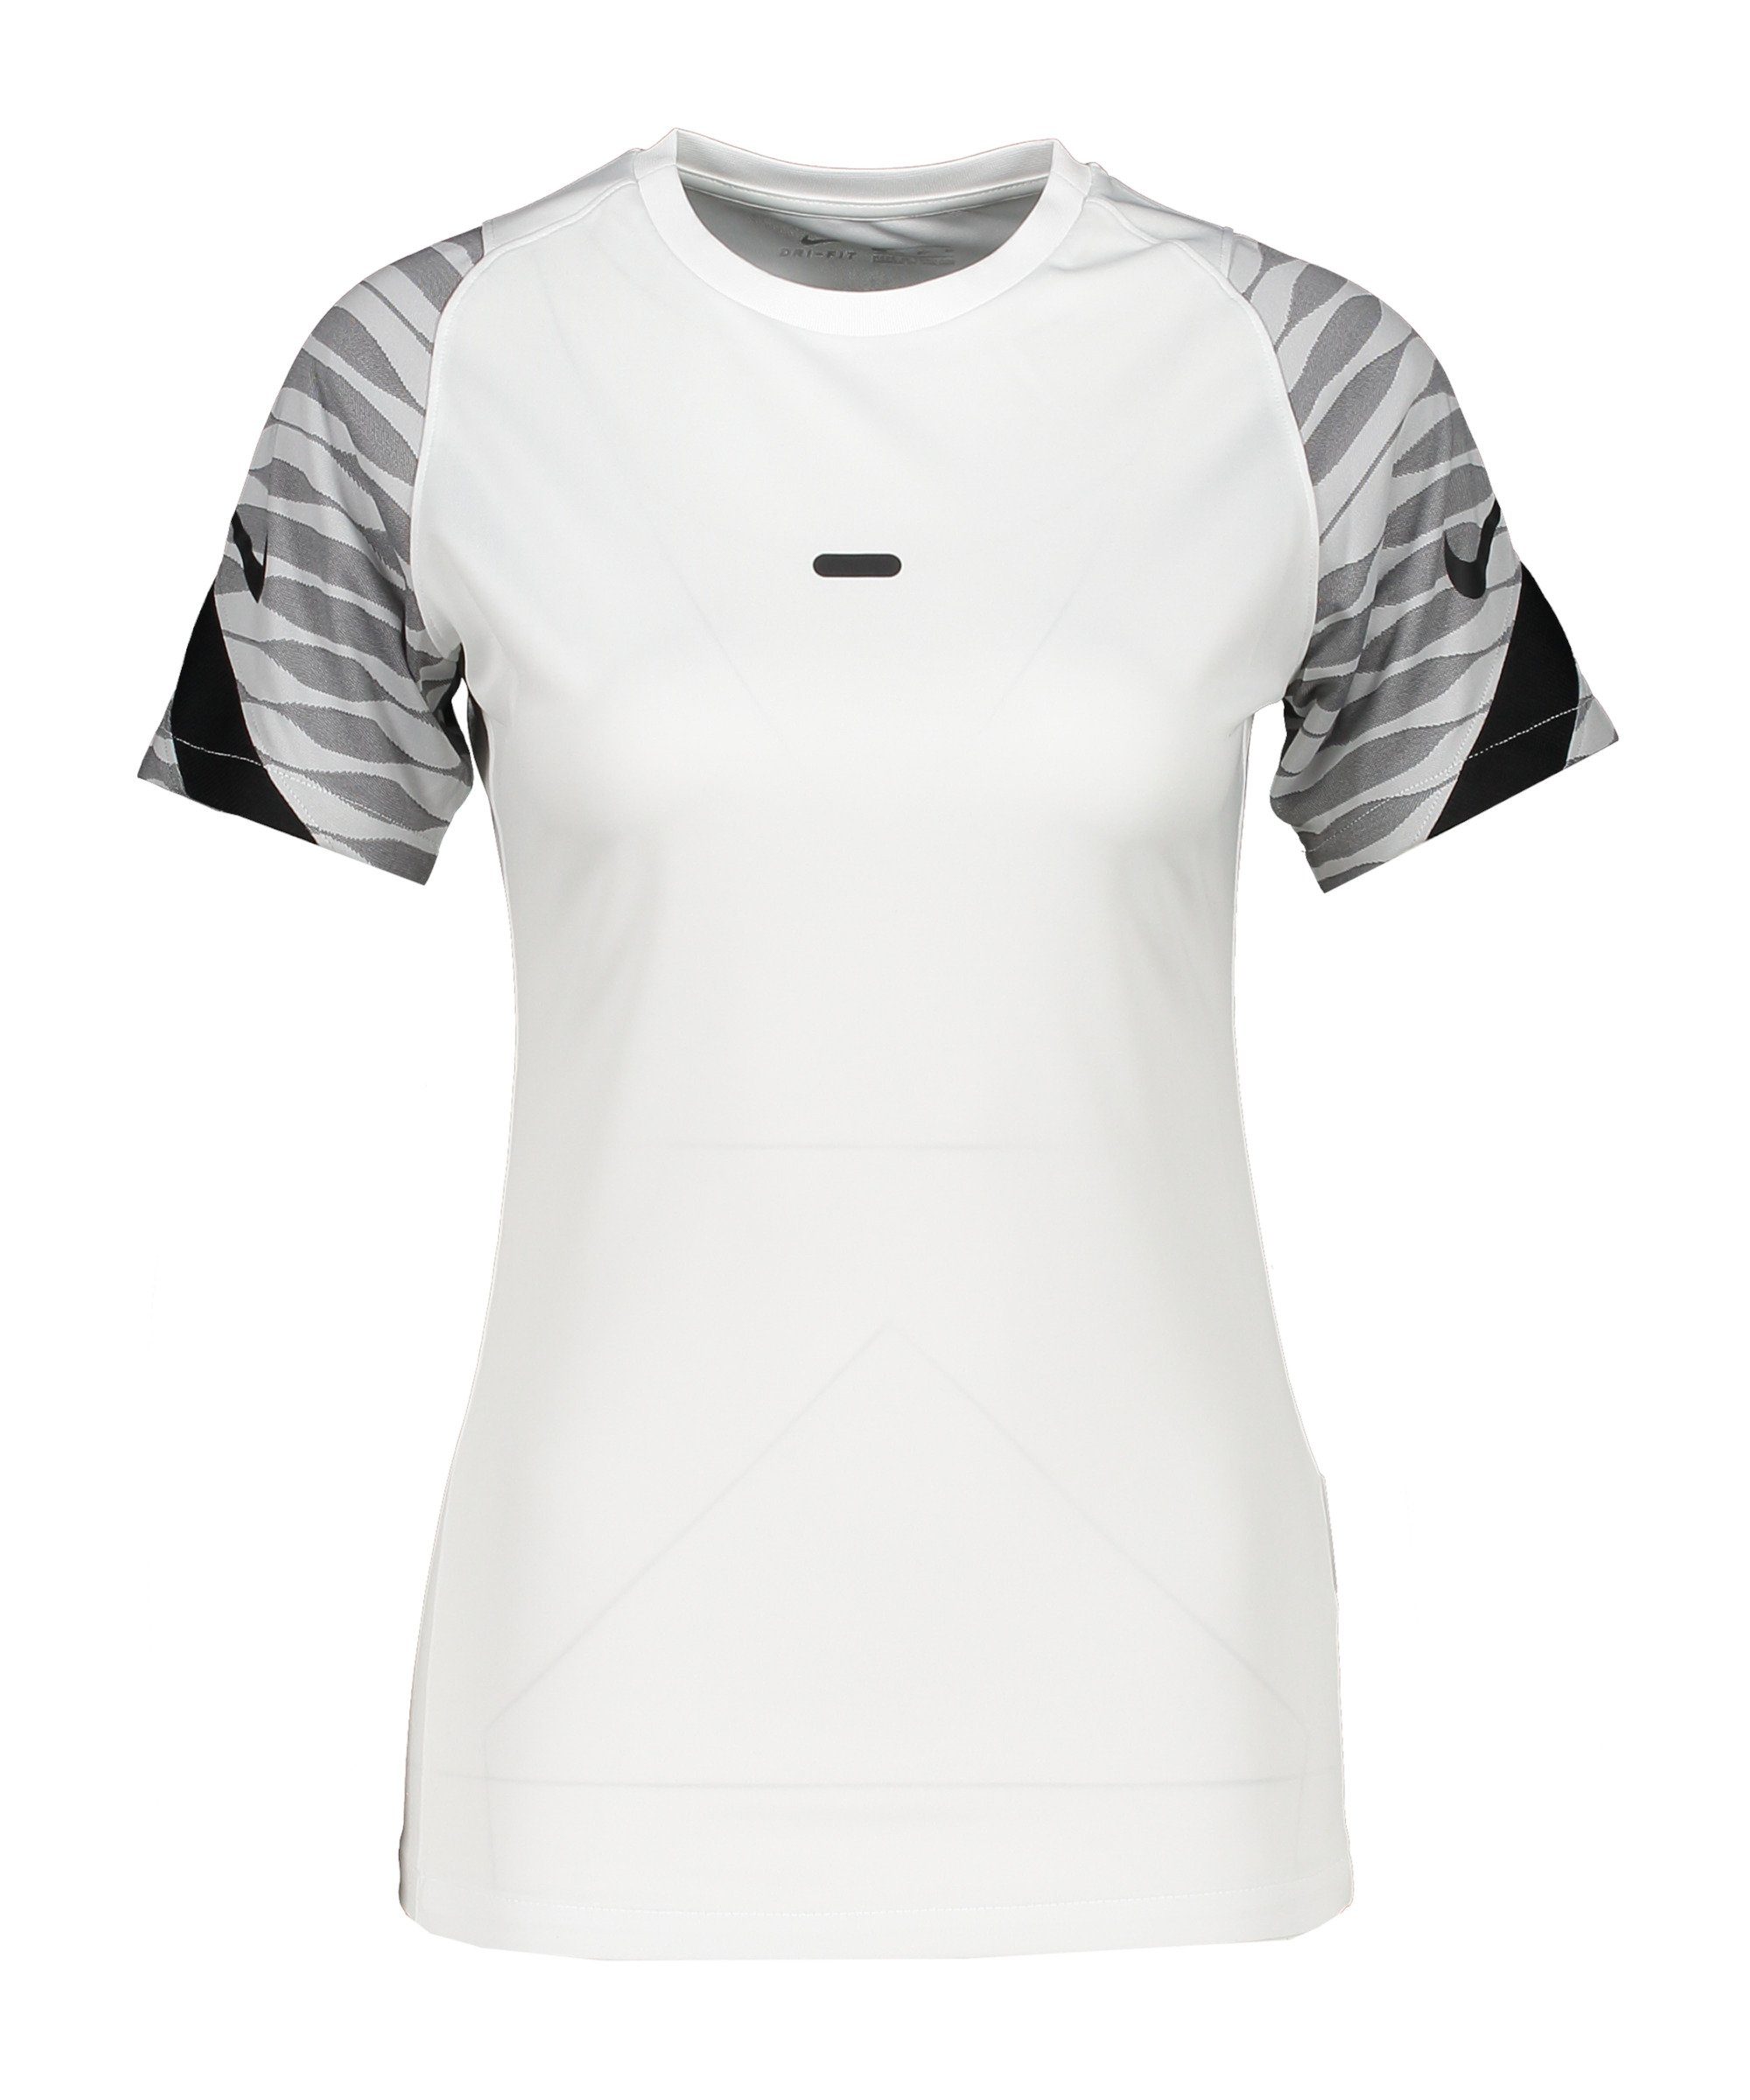 Nike T-Shirt Strike 21 T-Shirt Damen default weissschwarz